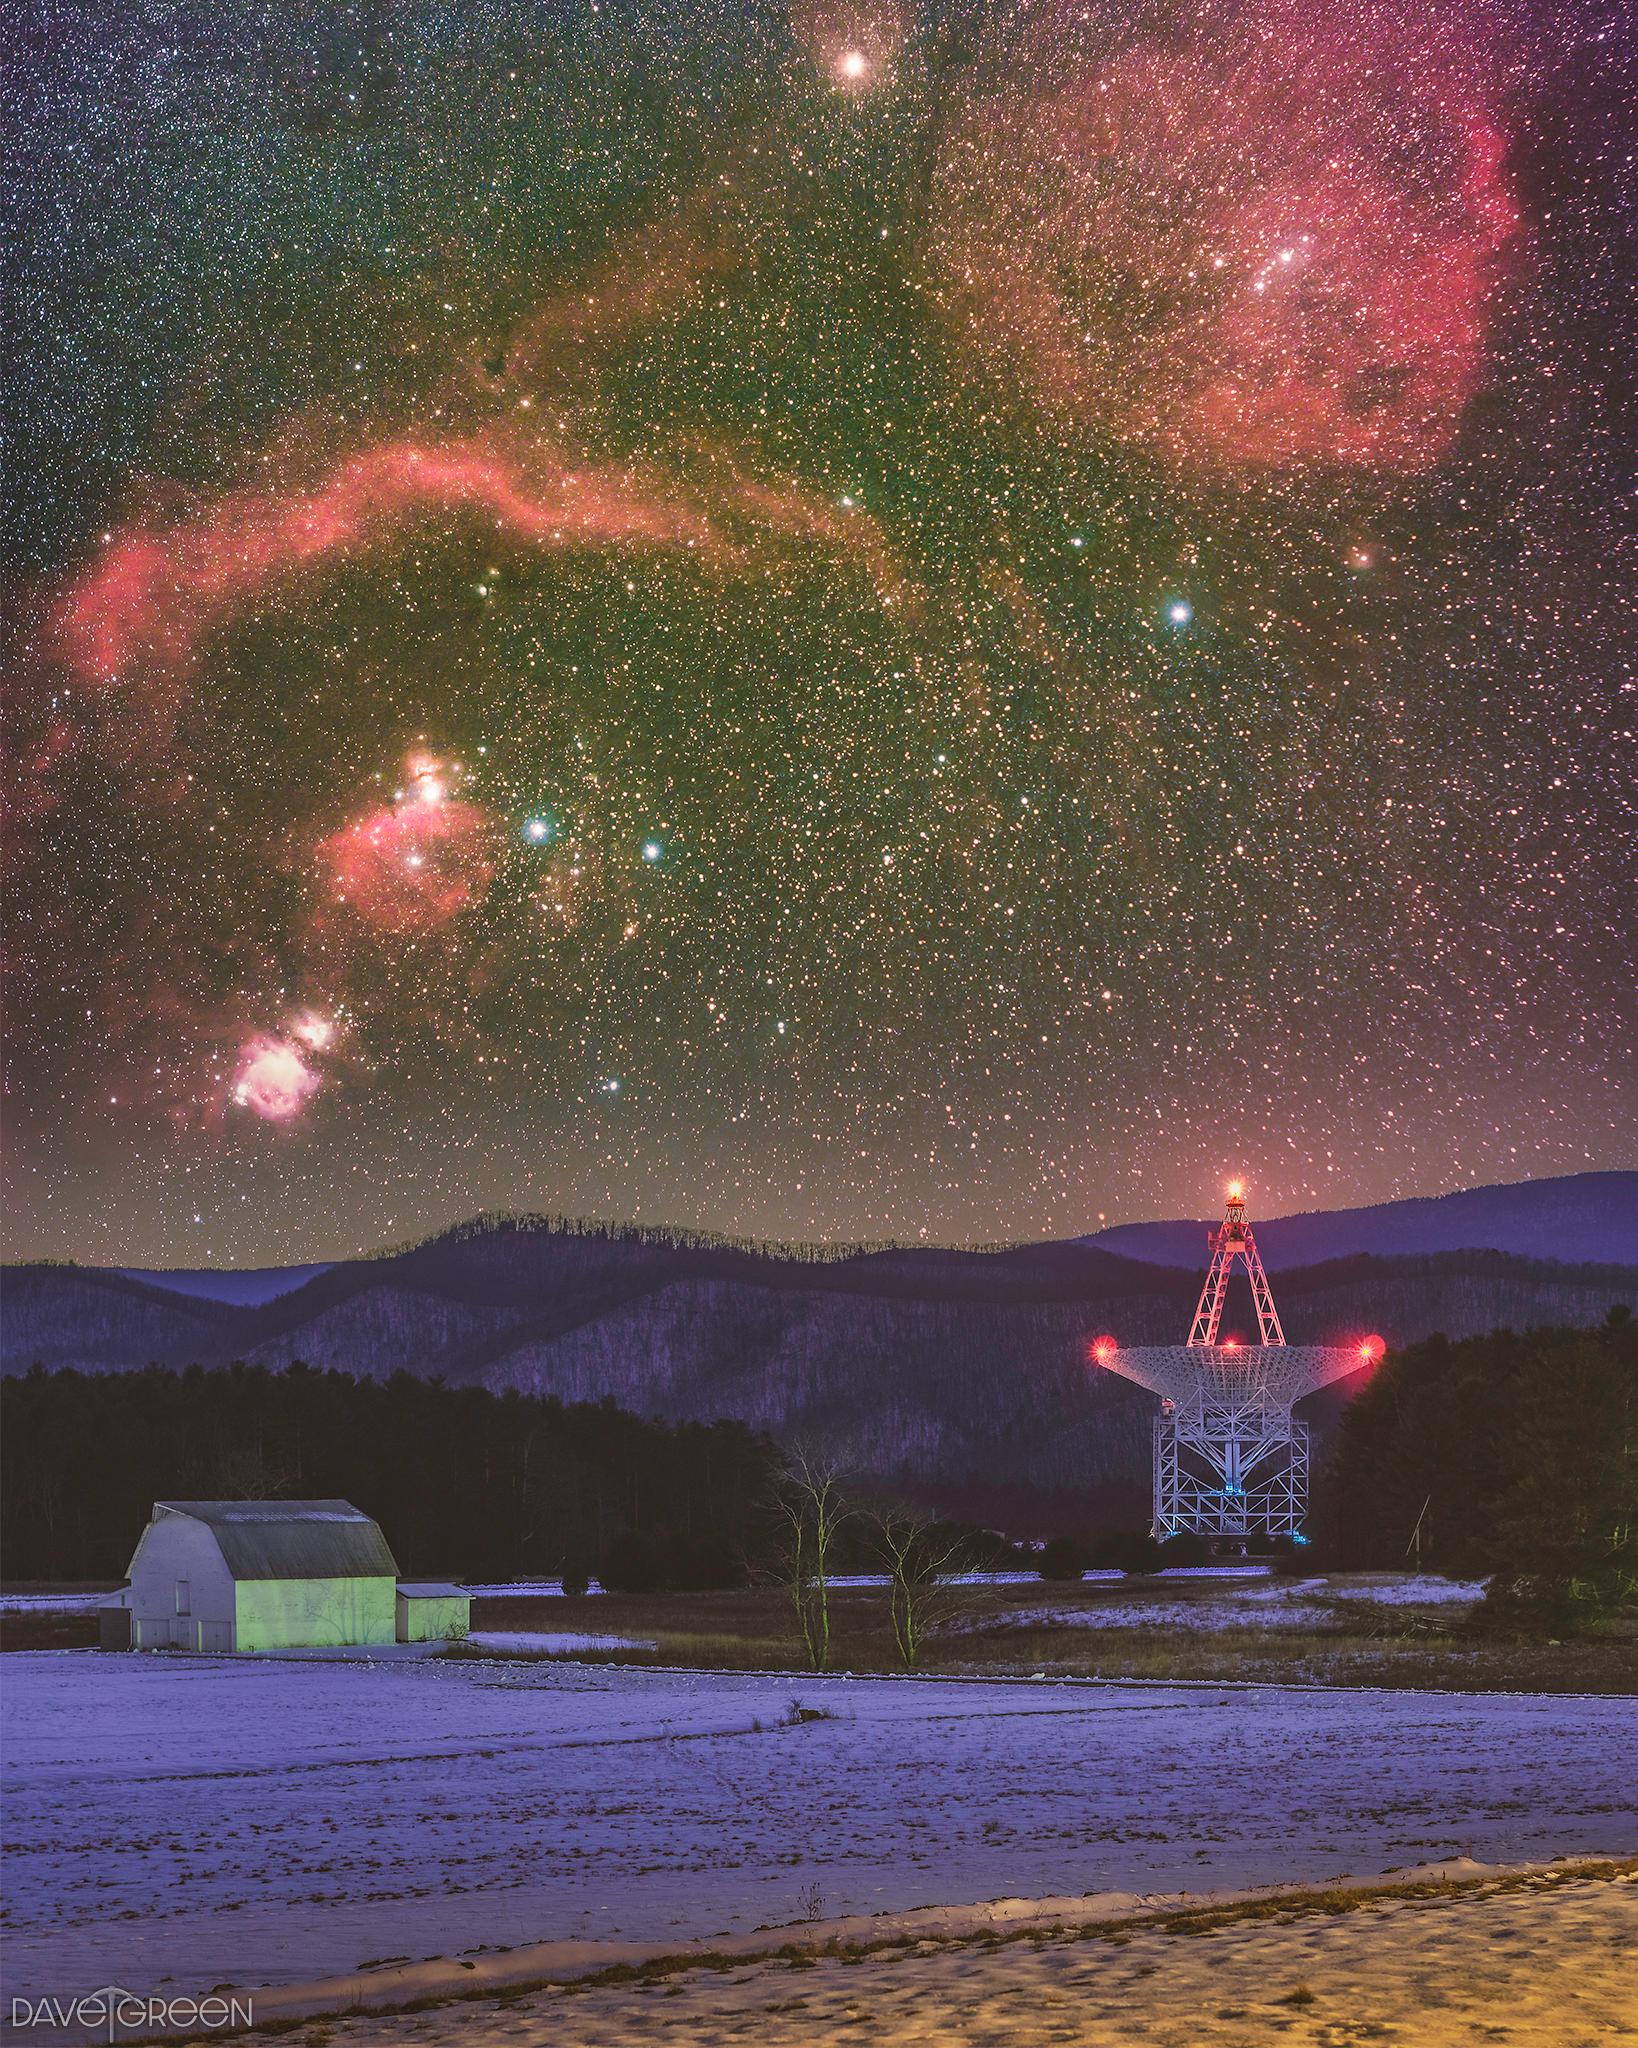 صورة لسماء الليل المرصّعة بالنجوم تظهر فيها بعض السدم ومن تحتها صحن تلسكوبٌ كبير عليه أضواء موجّه نحو الأعلى، وحوله أشجار وحظيرة وأرض كأنها مكسوّة بالثلوج